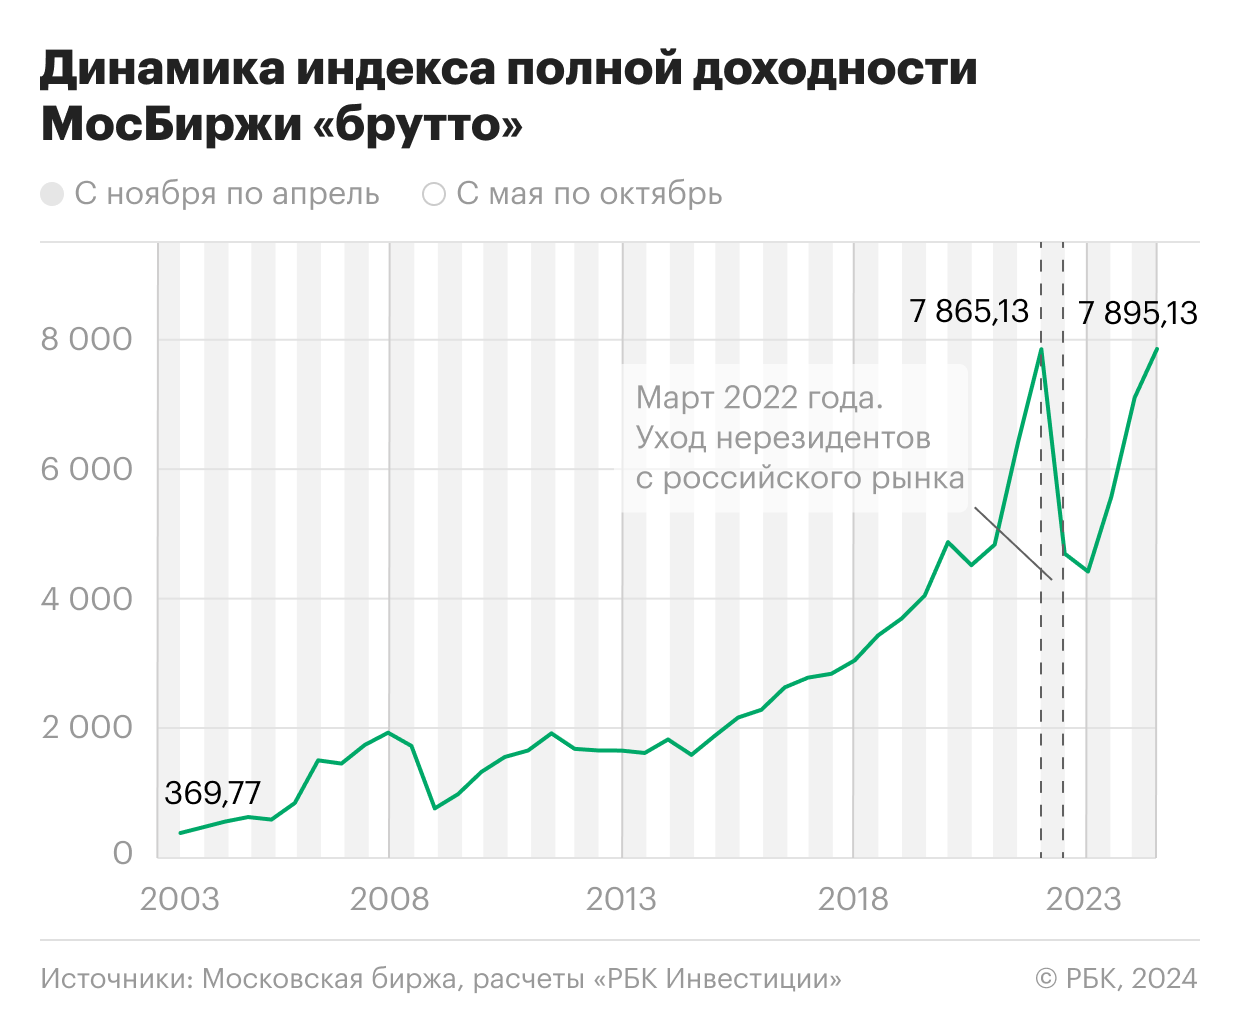 Сезонная динамика индекса Московской биржи полной доходности «брутто» с 2003 года по апрель 2024 года